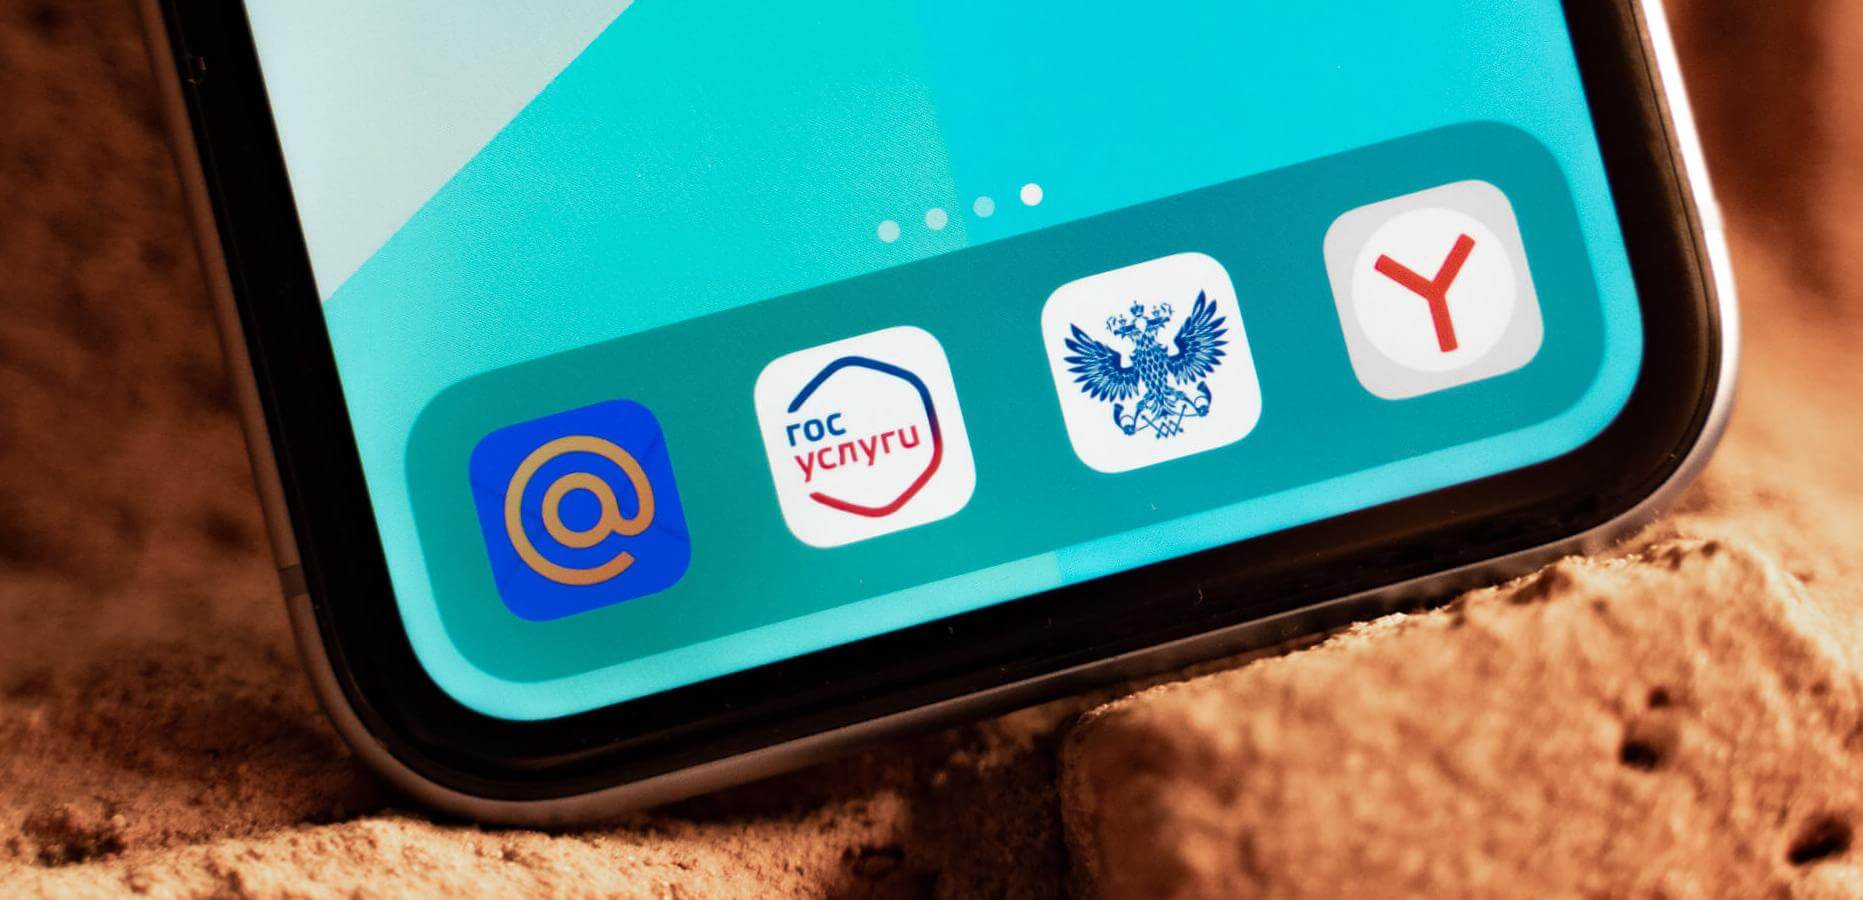 Производителей смартфонов обяжут брать «явный» отказ от установки российских приложений